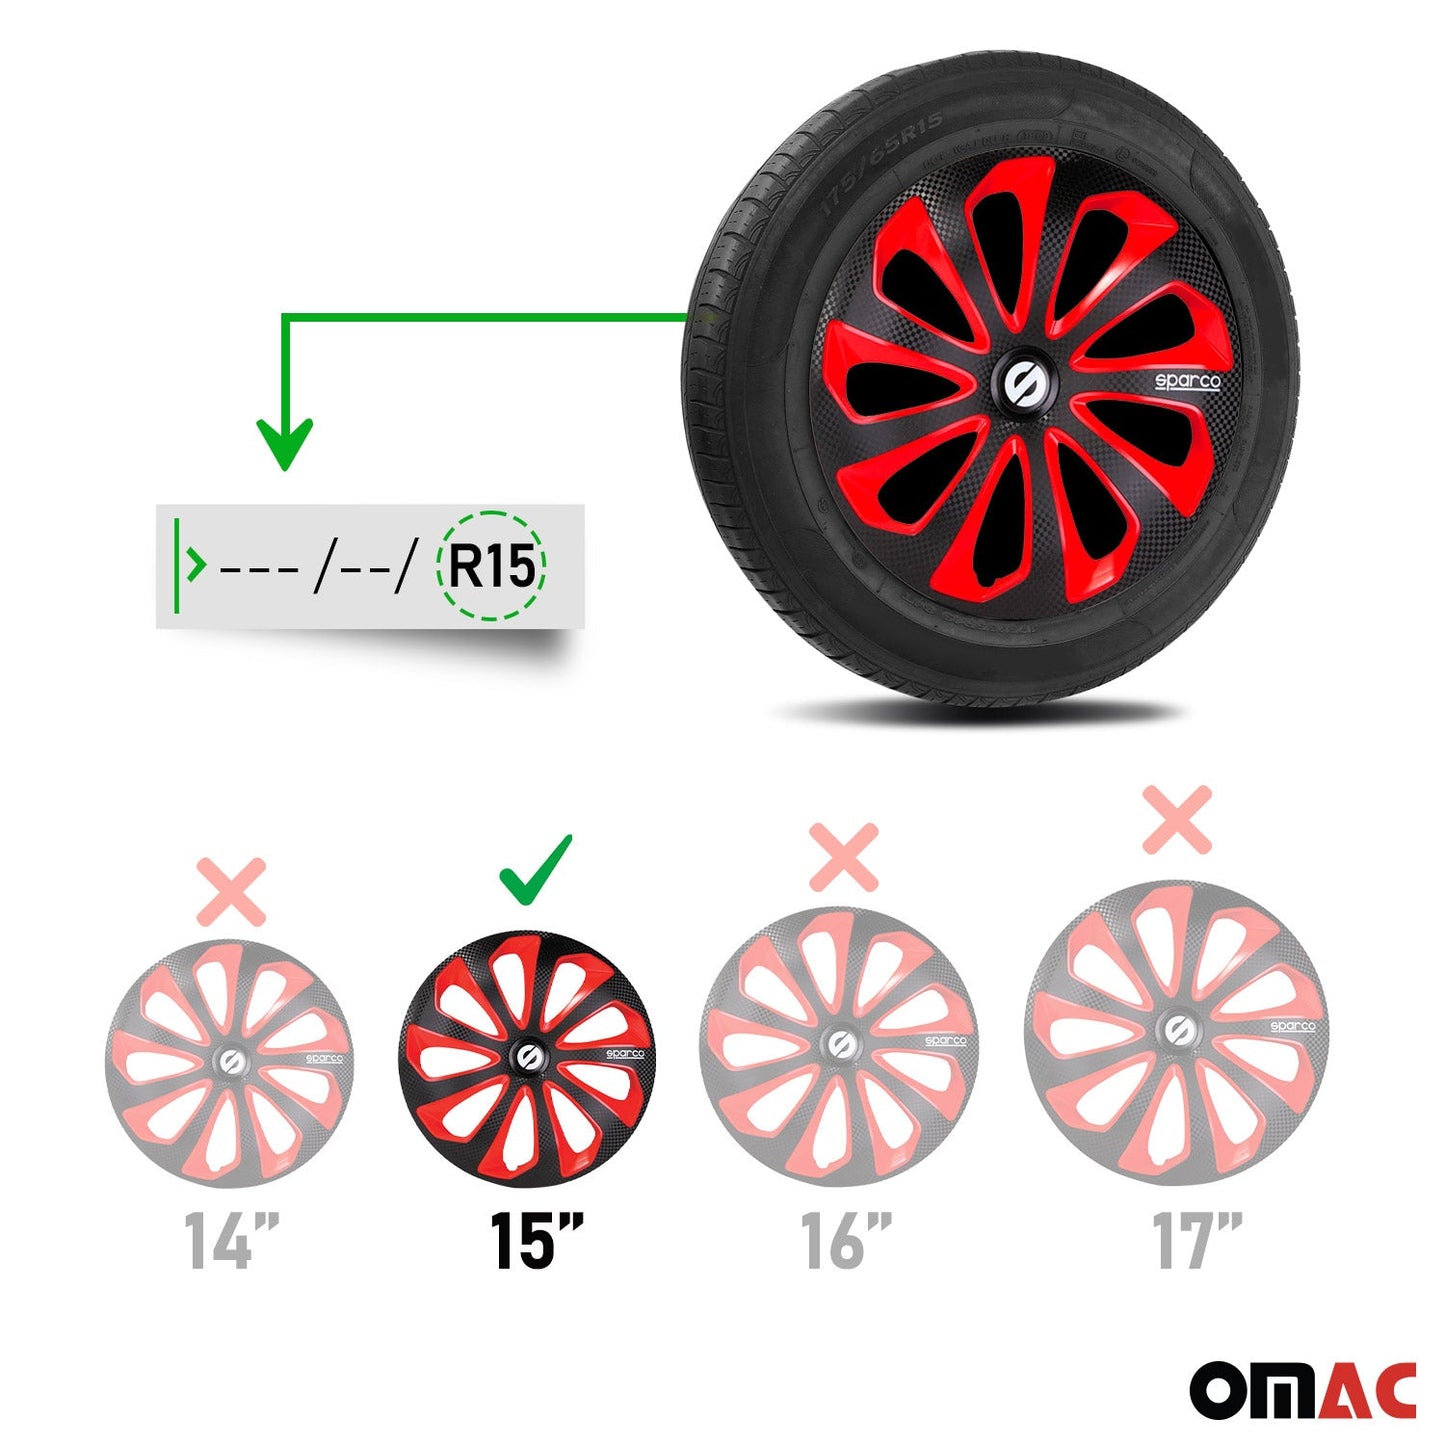 OMAC 15" Sparco Sicilia Wheel Covers Hubcaps Black Red Carbon 4 Pcs 96SPC1575BKRDC